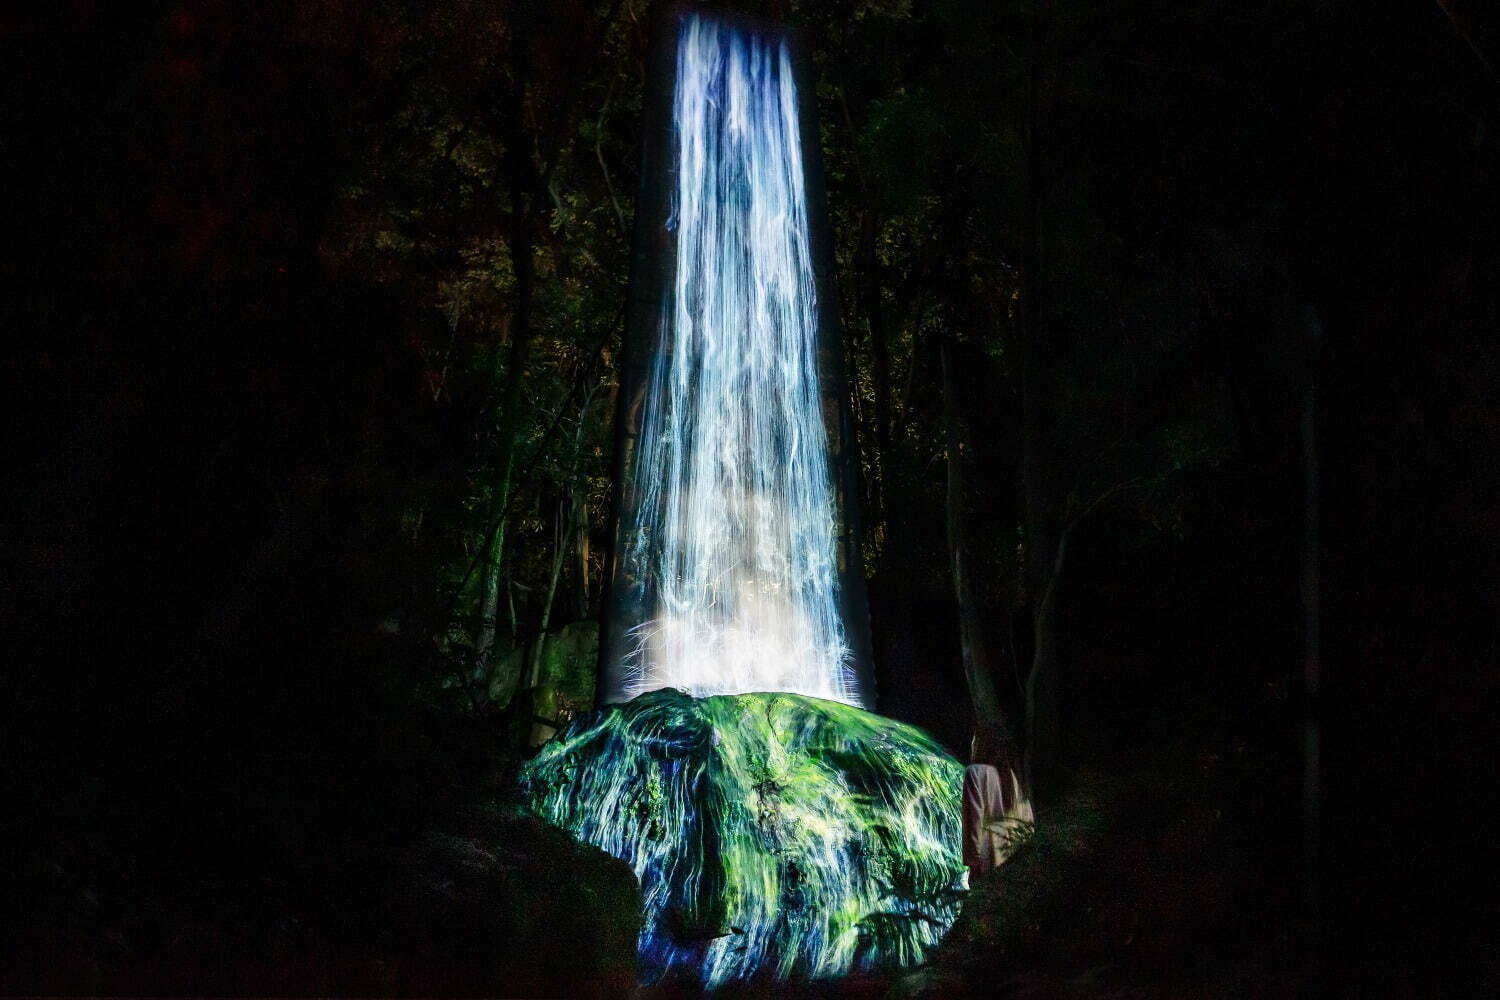 「かみさまの御前なる岩に憑依する滝 / Universe of Water Particles on a Sacred Rock」
teamLab, 2017, Digitized Nature